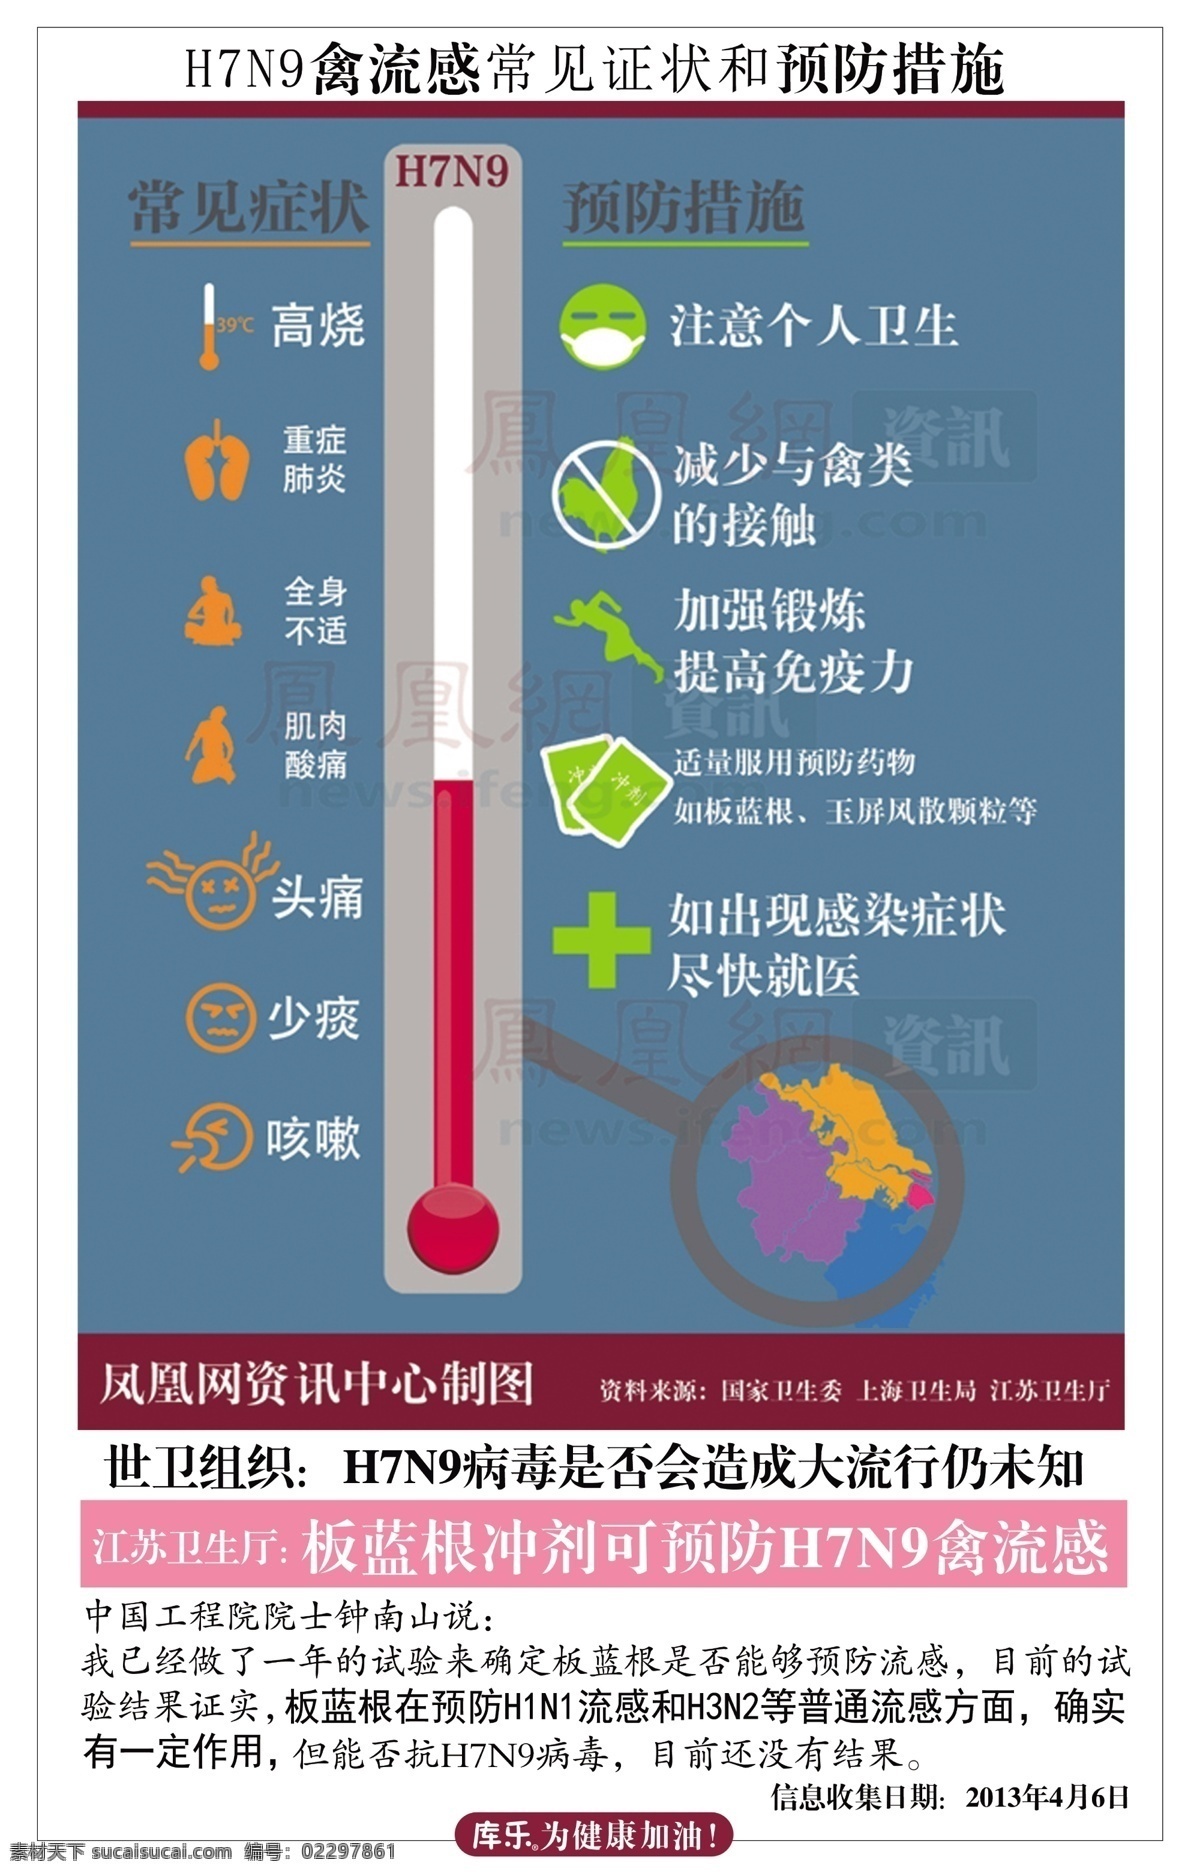 流感 公益 海报 h7n9 禽流感 矢量 模板下载 流感公益海报 环保公益海报